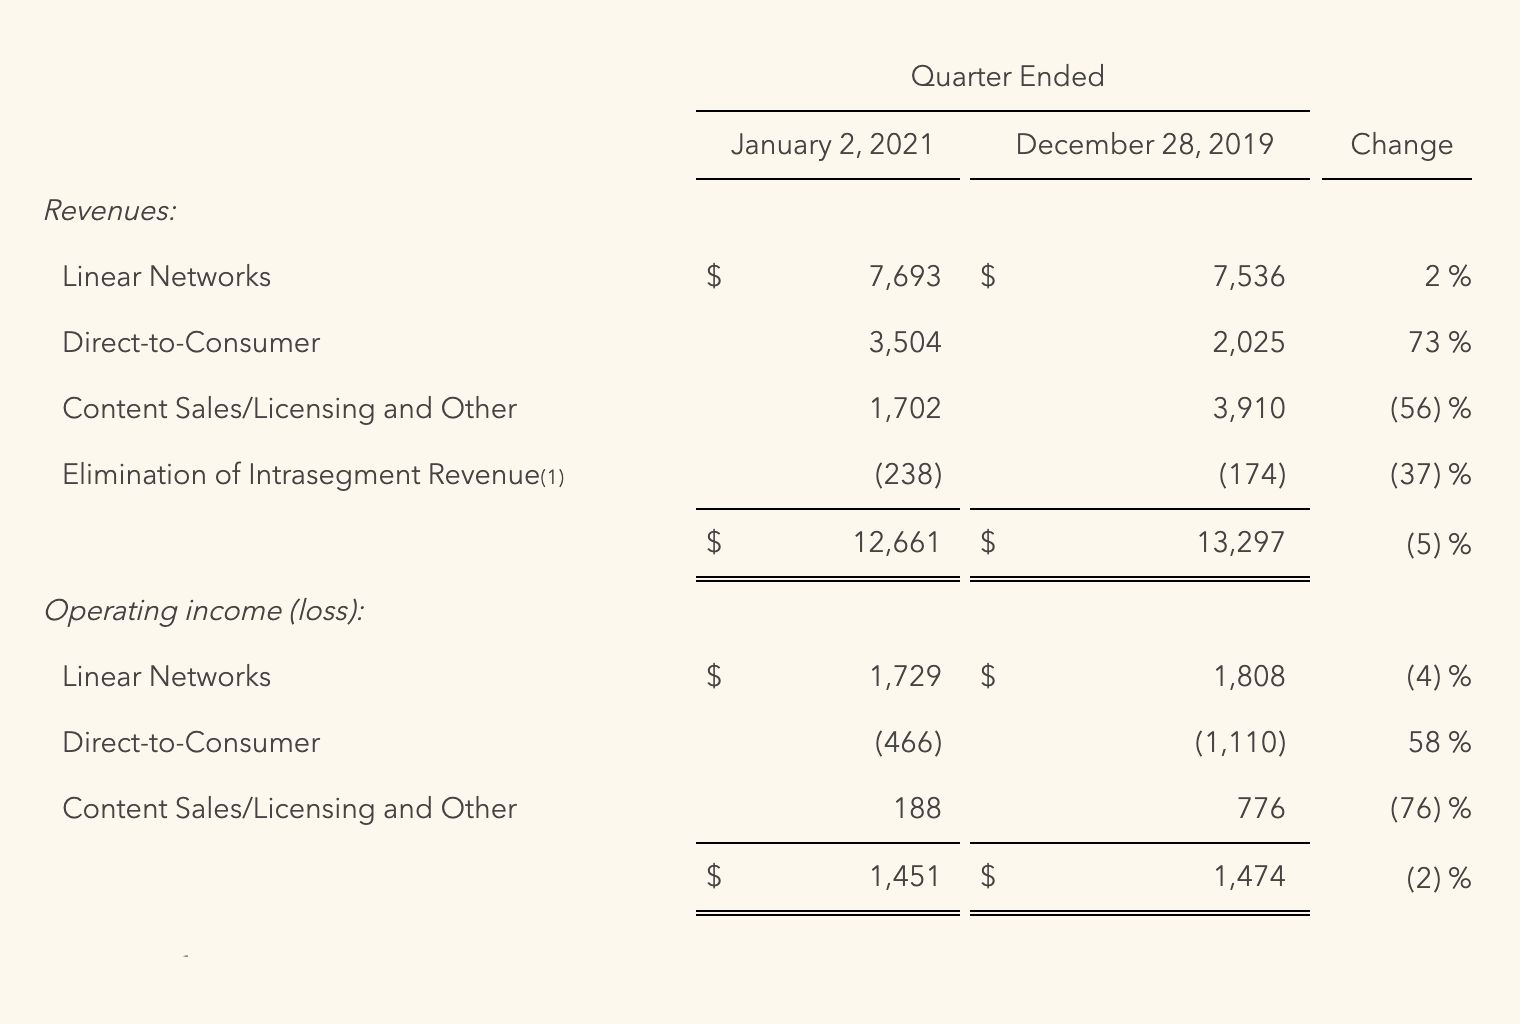 Финансовые результаты компании за кварталы, окончившиеся 02.01.2021 и 28.12.2019, в миллионах долларов. Источник: сайт компании